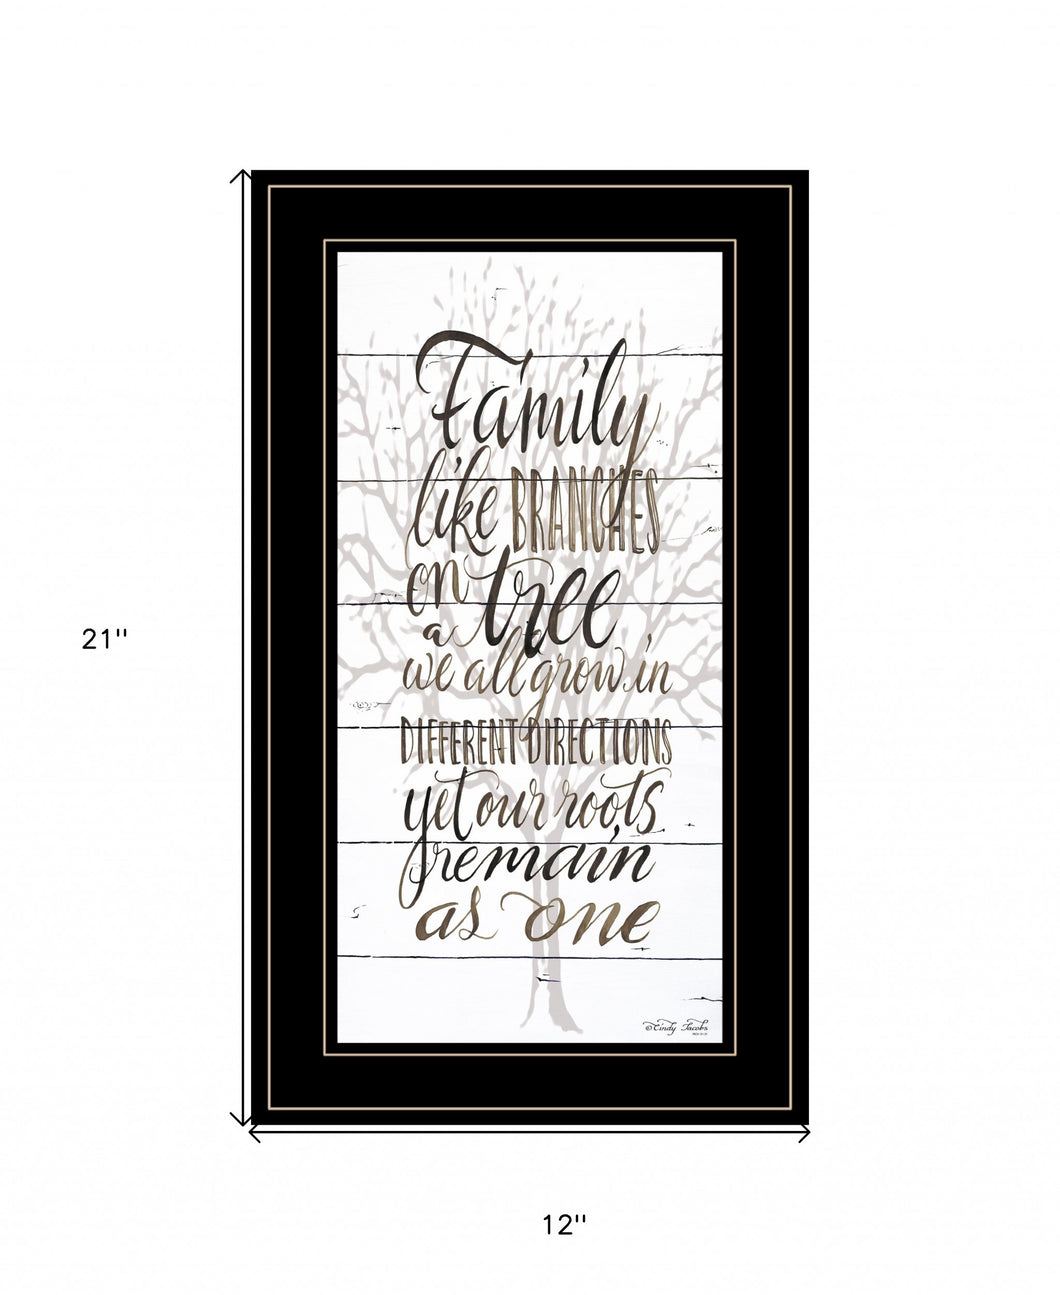 Family 5 Black Framed Print Wall Art - Buy JJ's Stuff